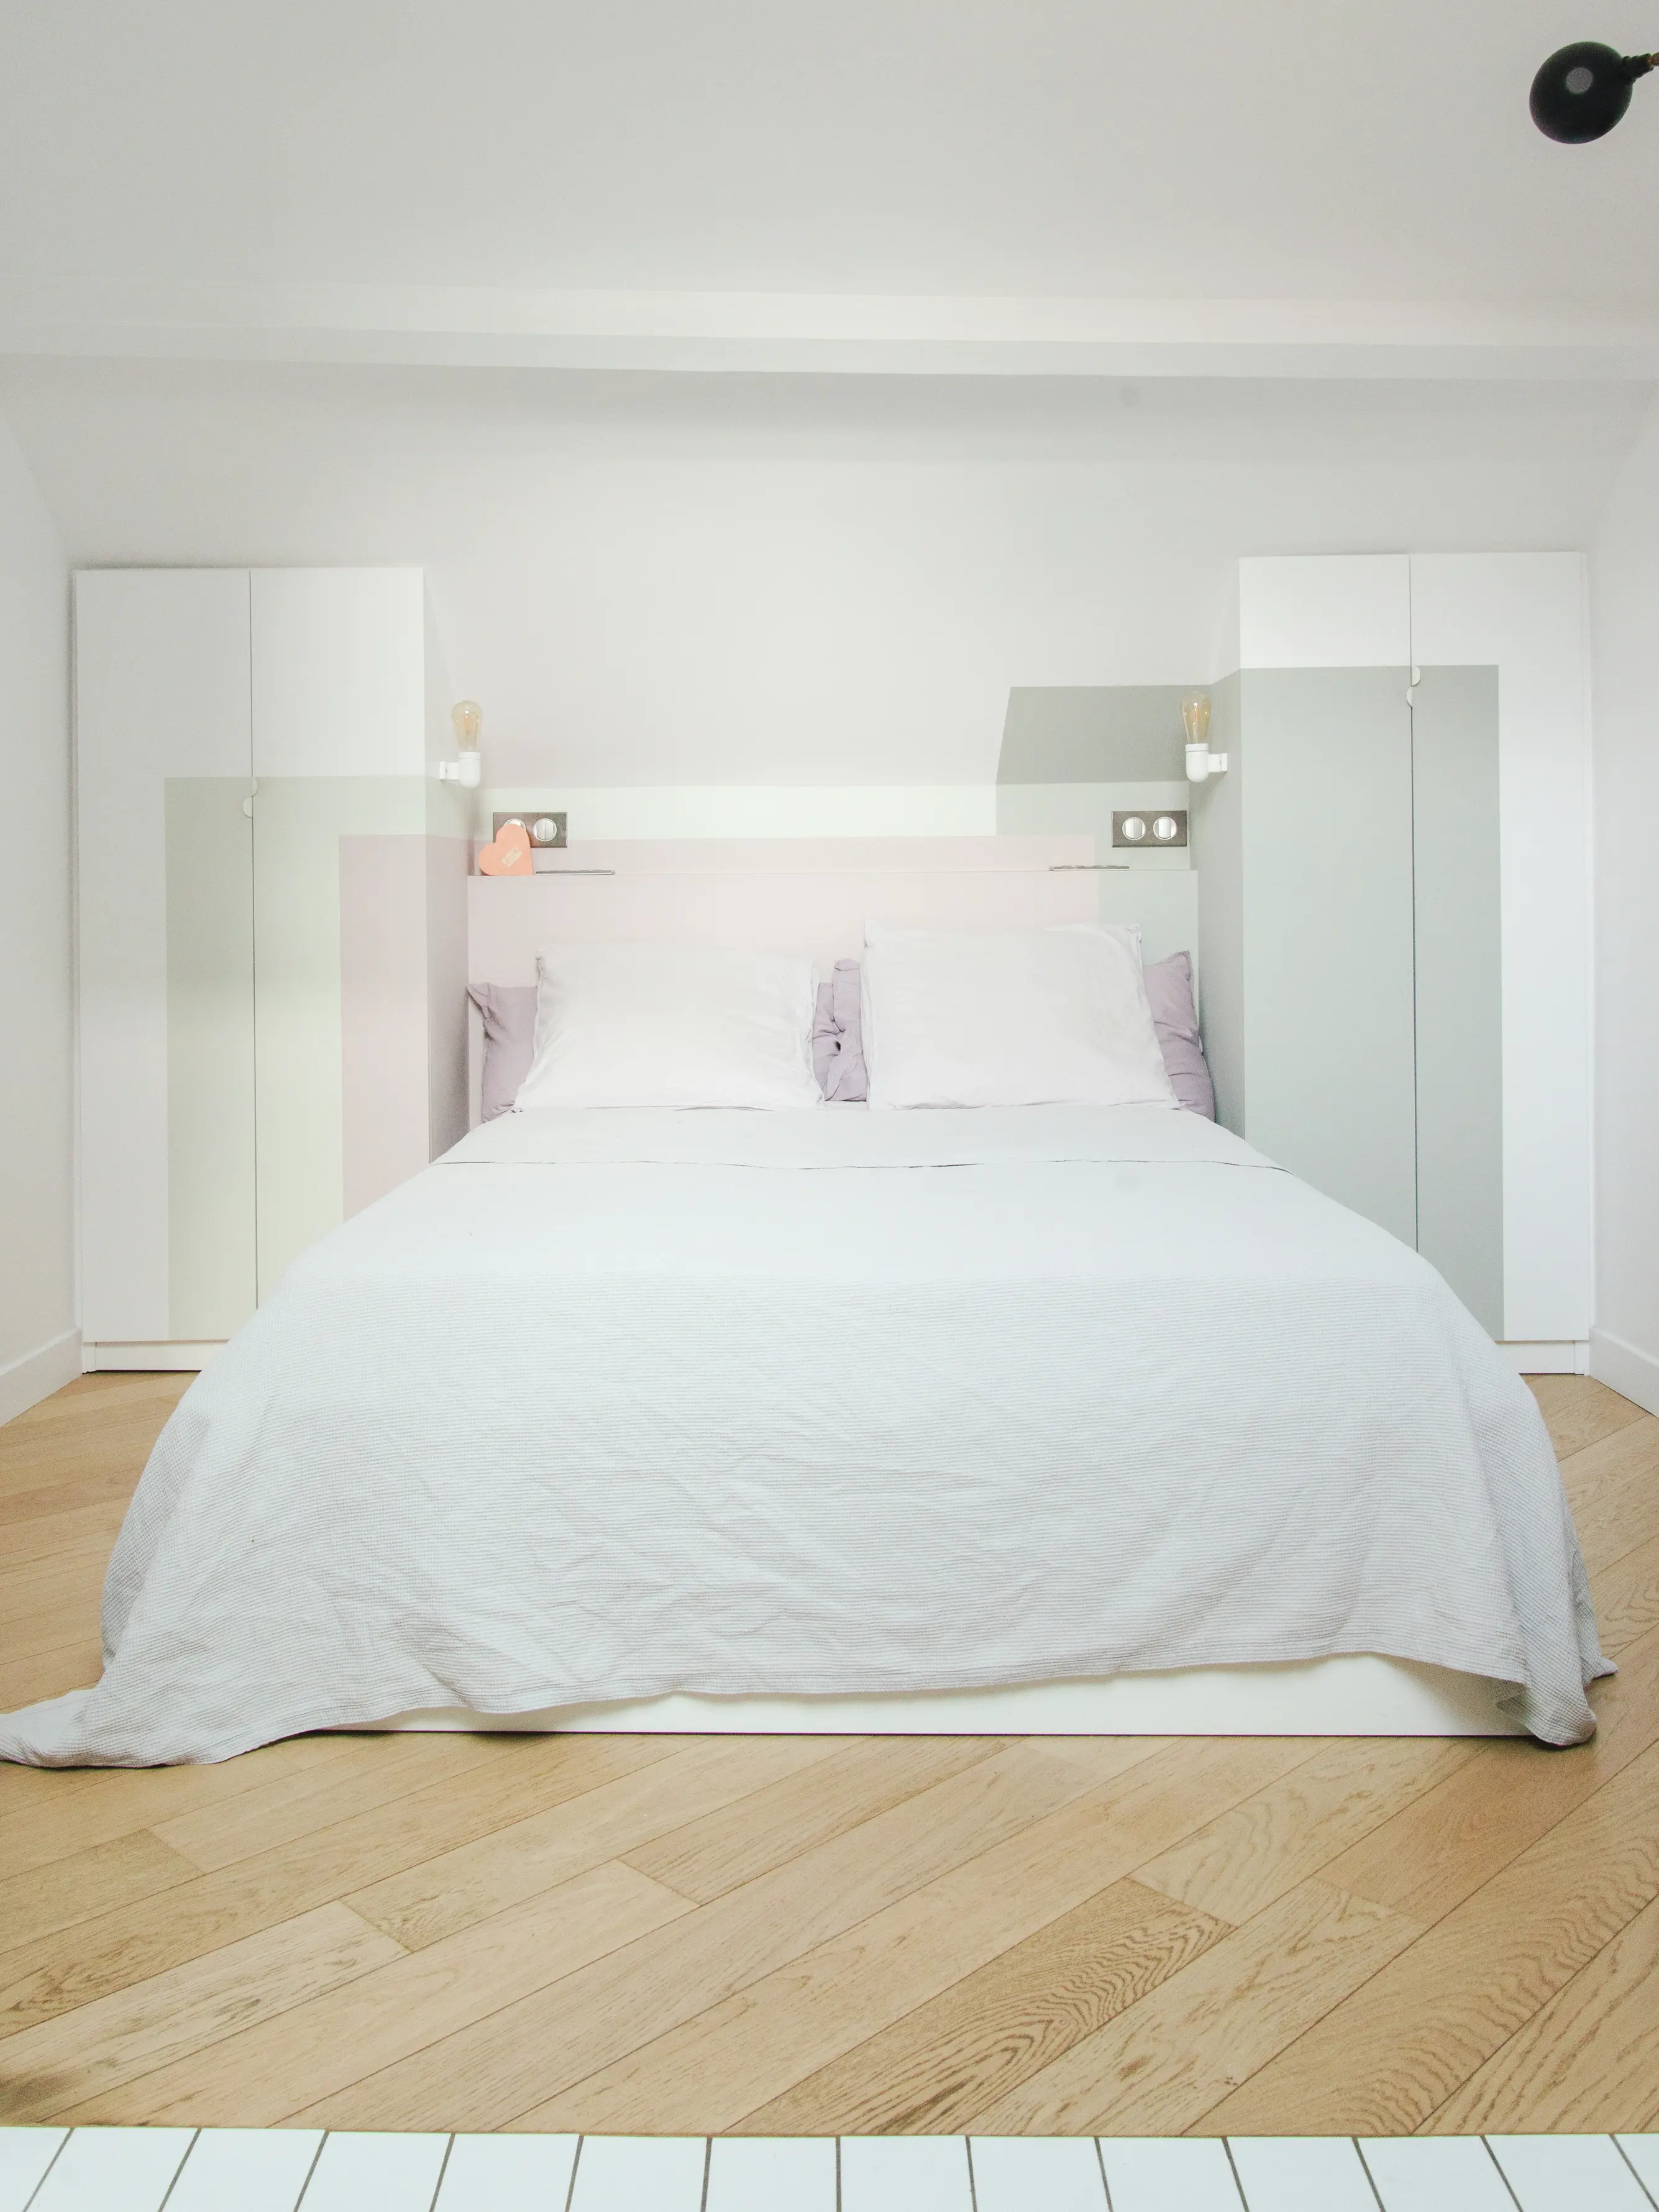 Camera da letto serena con biancheria bianca, accenti lavanda e pavimento in legno.